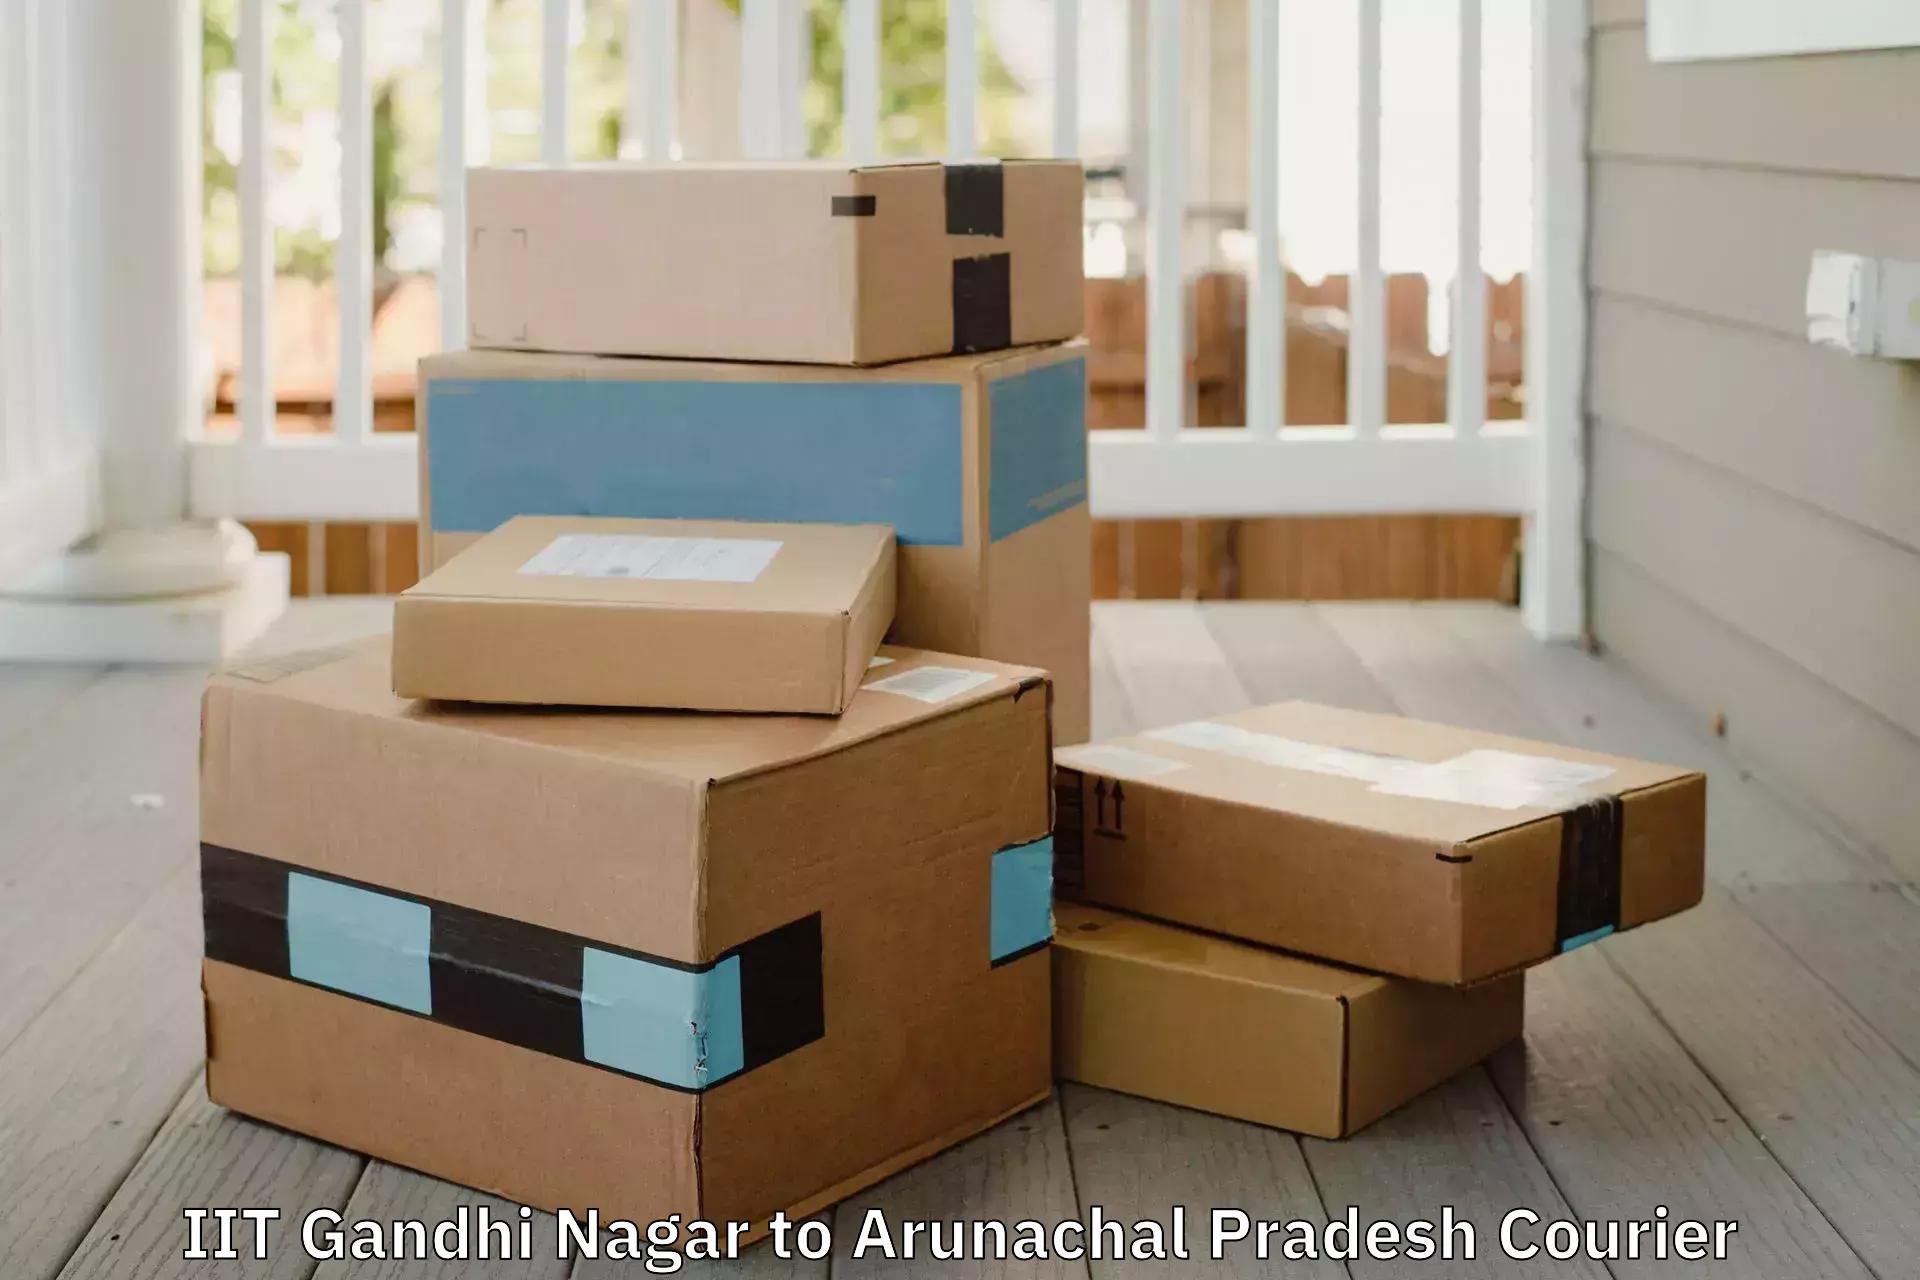 Furniture shipping services IIT Gandhi Nagar to Lohit